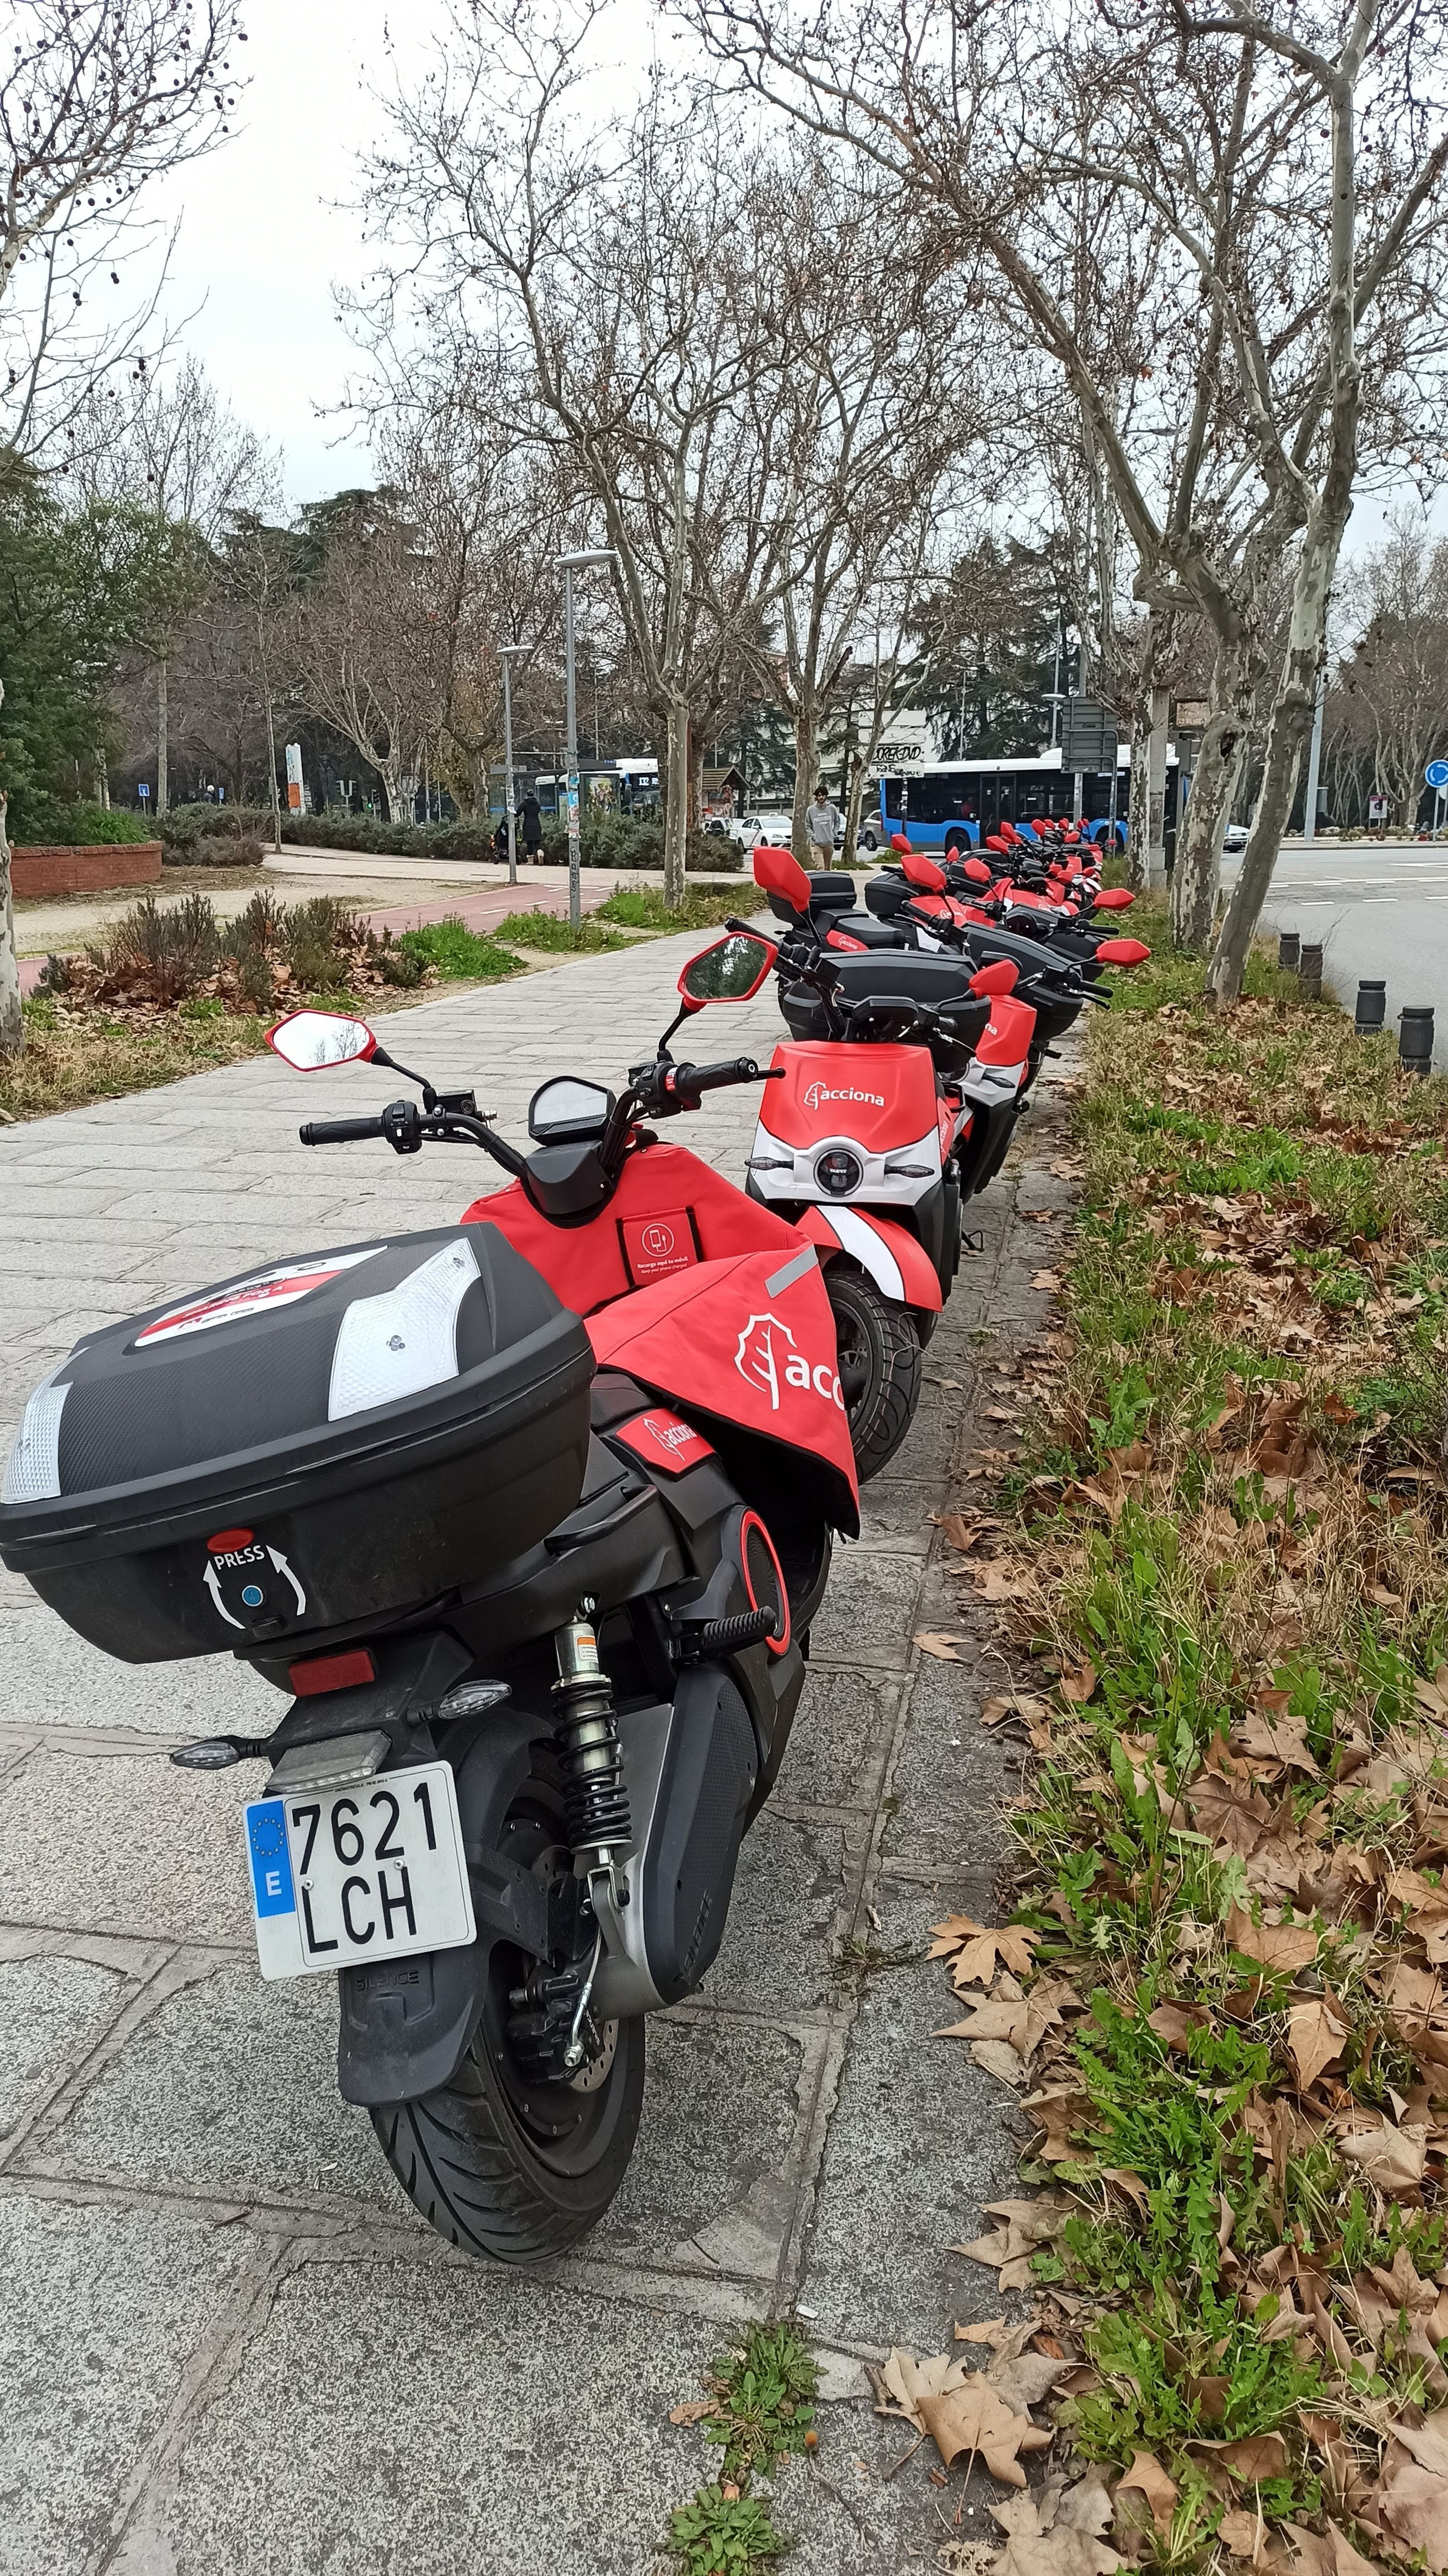 Motos de Acciona aparcadas en la acera, en Madrid.